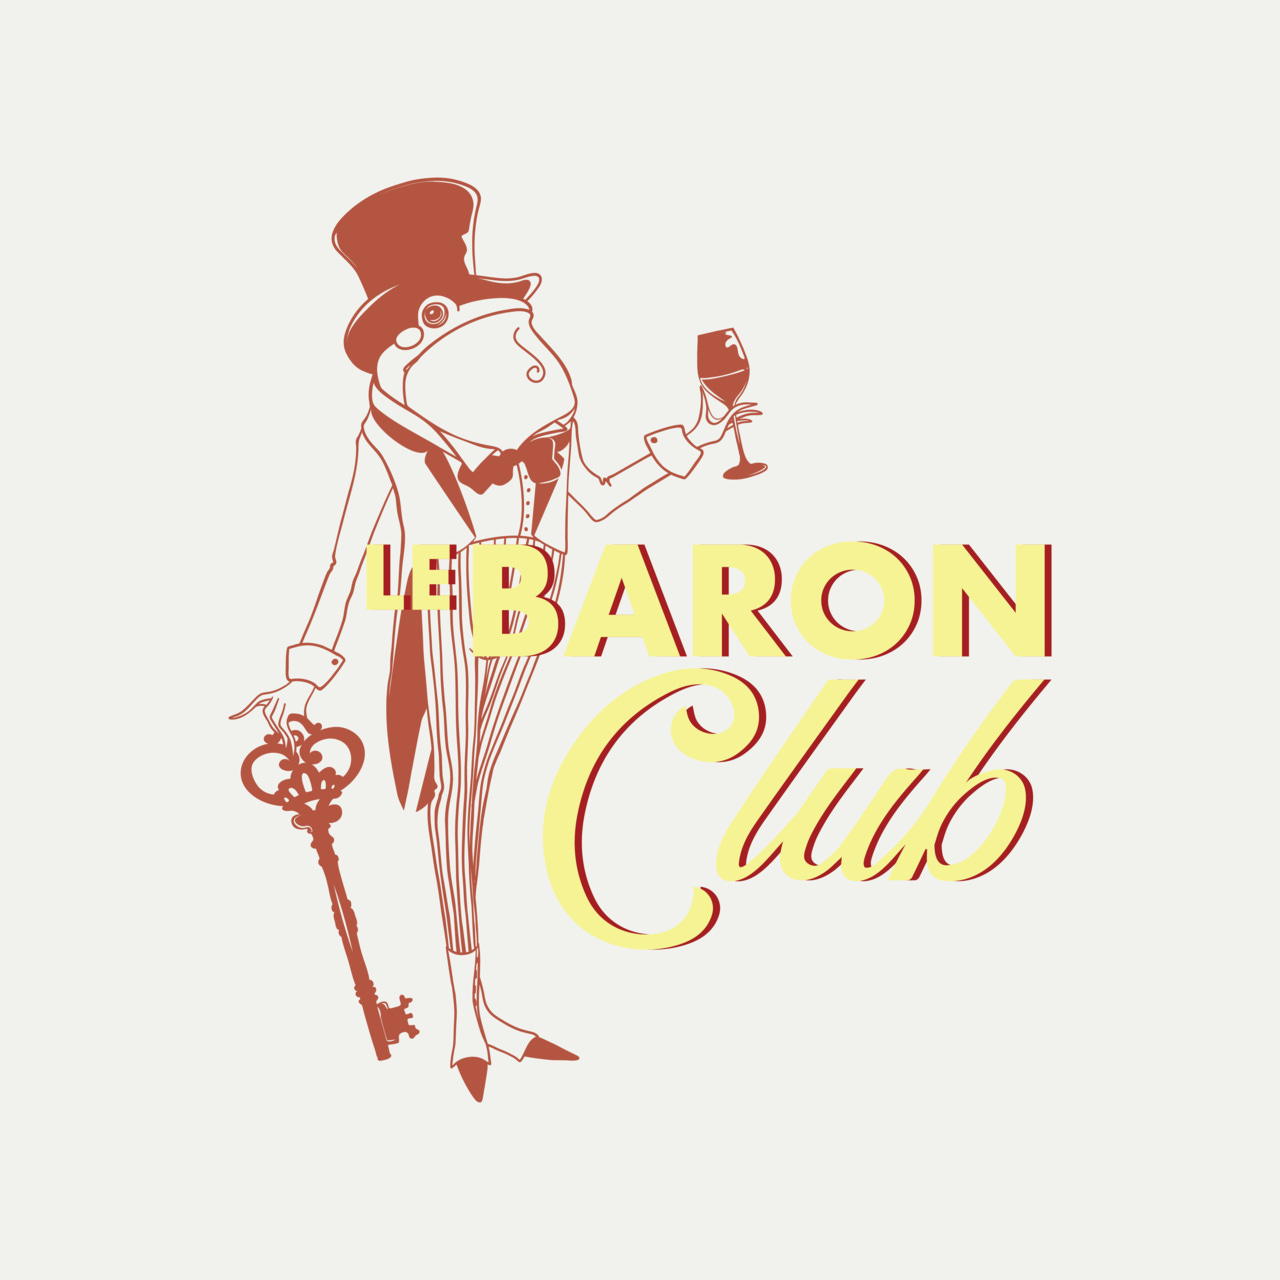 Le Baron Club